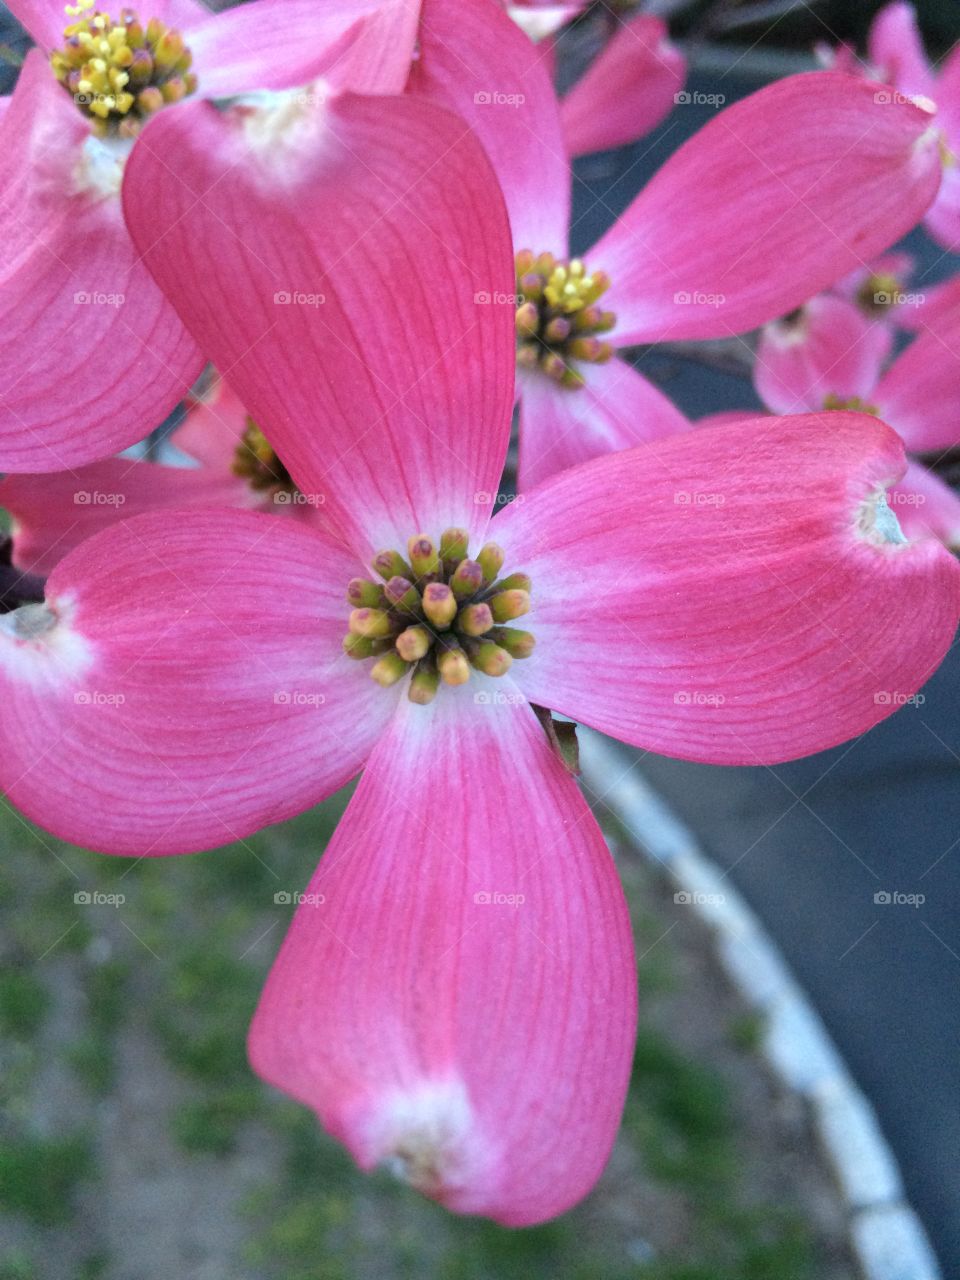 Dogwood blossom 